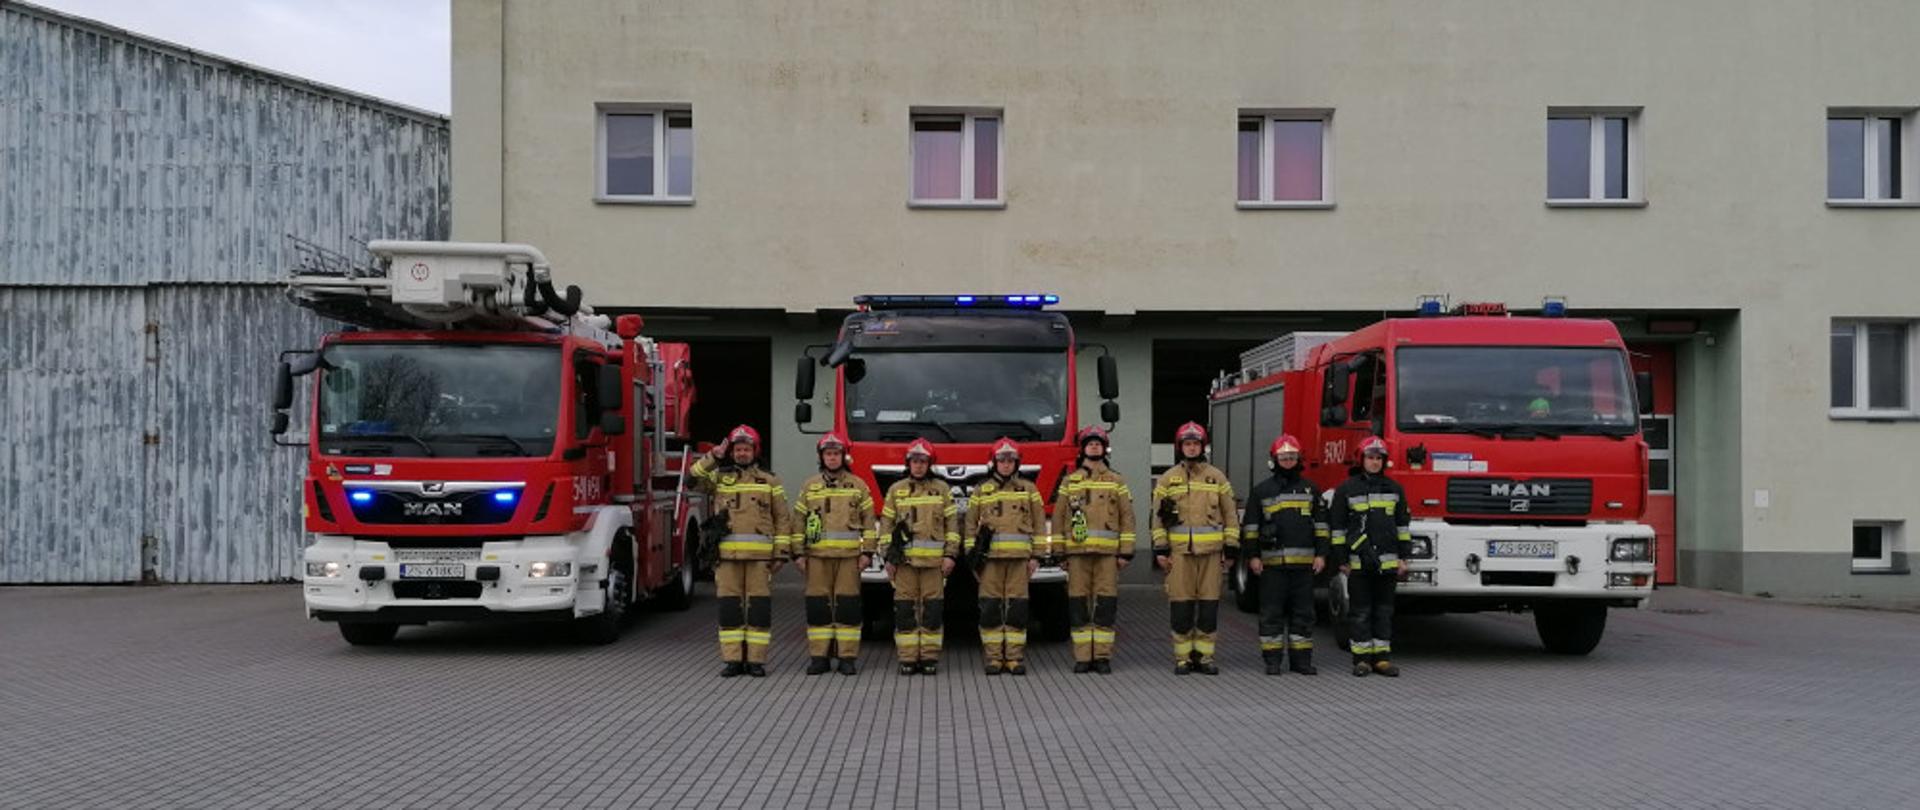 Hołd dla ofiar katastrofy smoleńskiej - strażacy w ubraniach specjalnych koloru piaskowego i granatowego stoją na tle samochodów strażackich